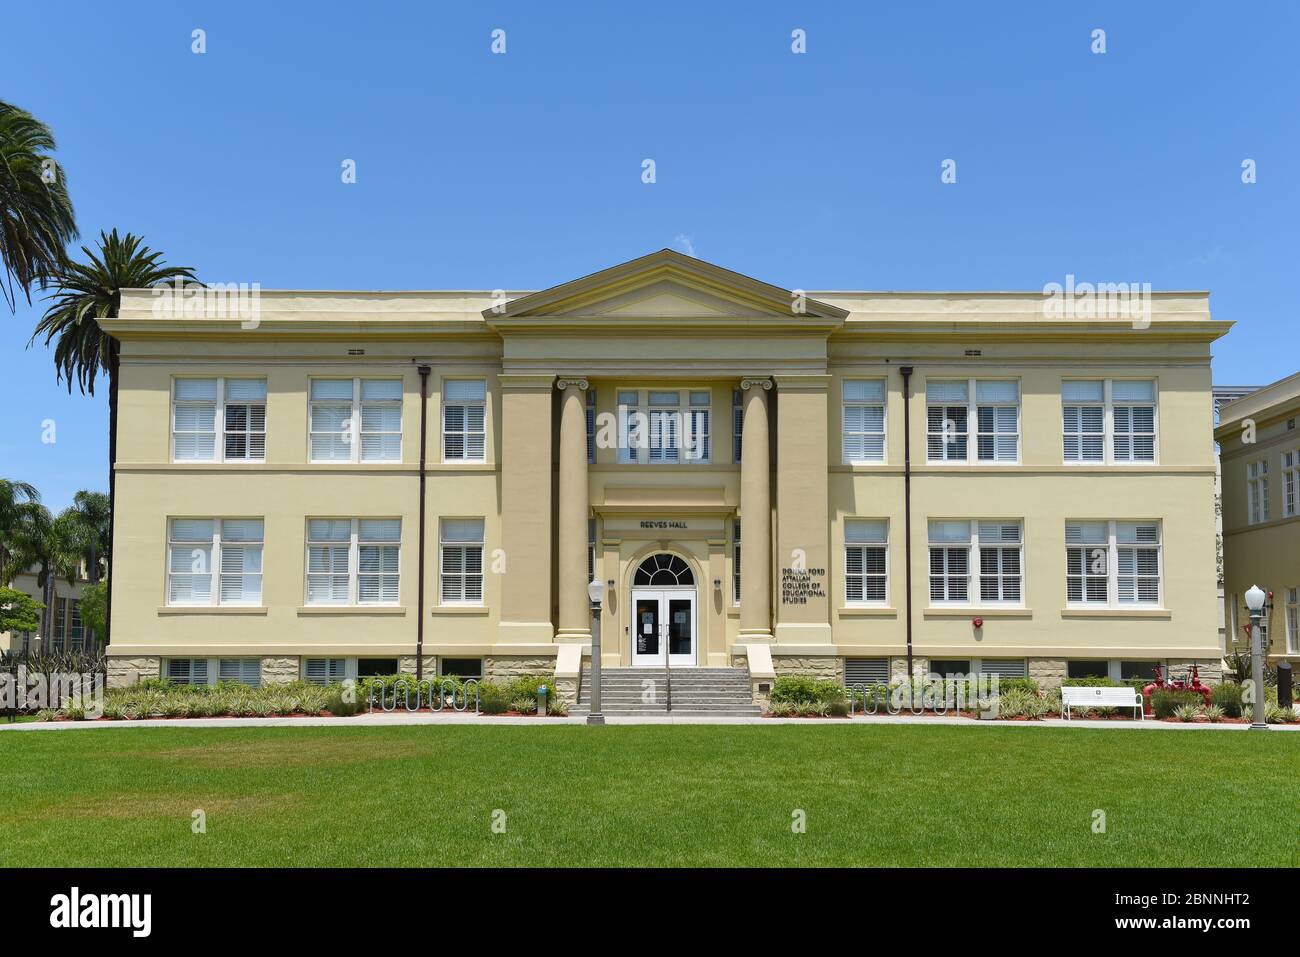 ORANGE, CALIFORNIA - 14 DE MAYO de 2020: Reeves Hall en el campus de la Universidad Chapman. Foto de stock